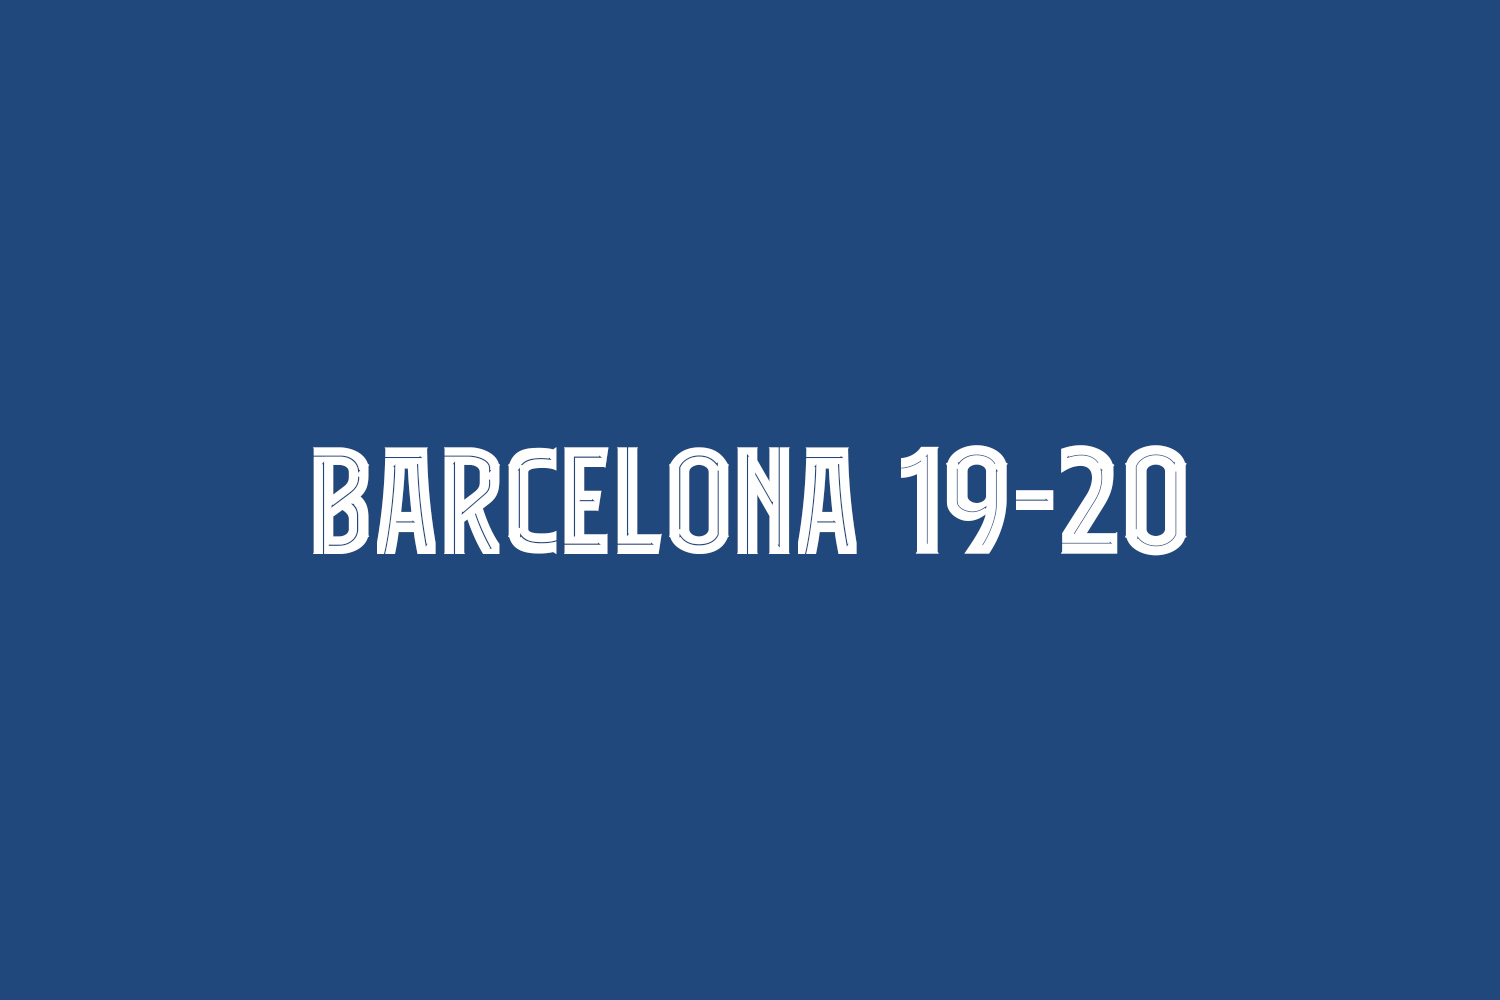 Barcelona 19-20 Free Font